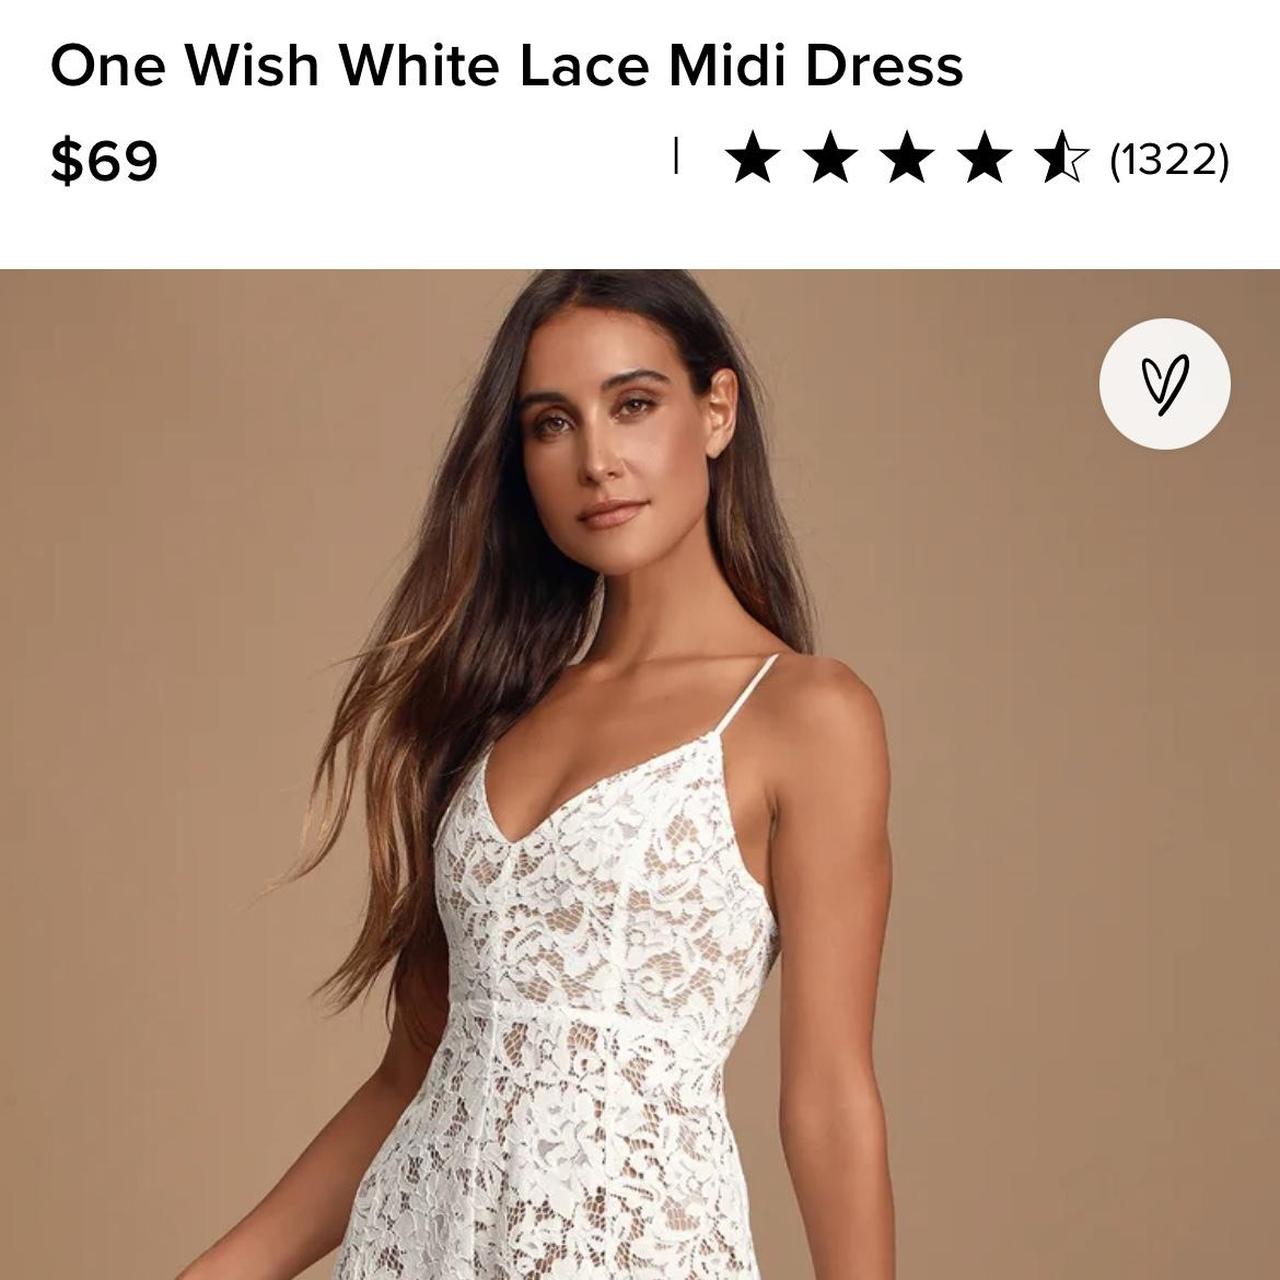 One Wish White Lace Midi Dress